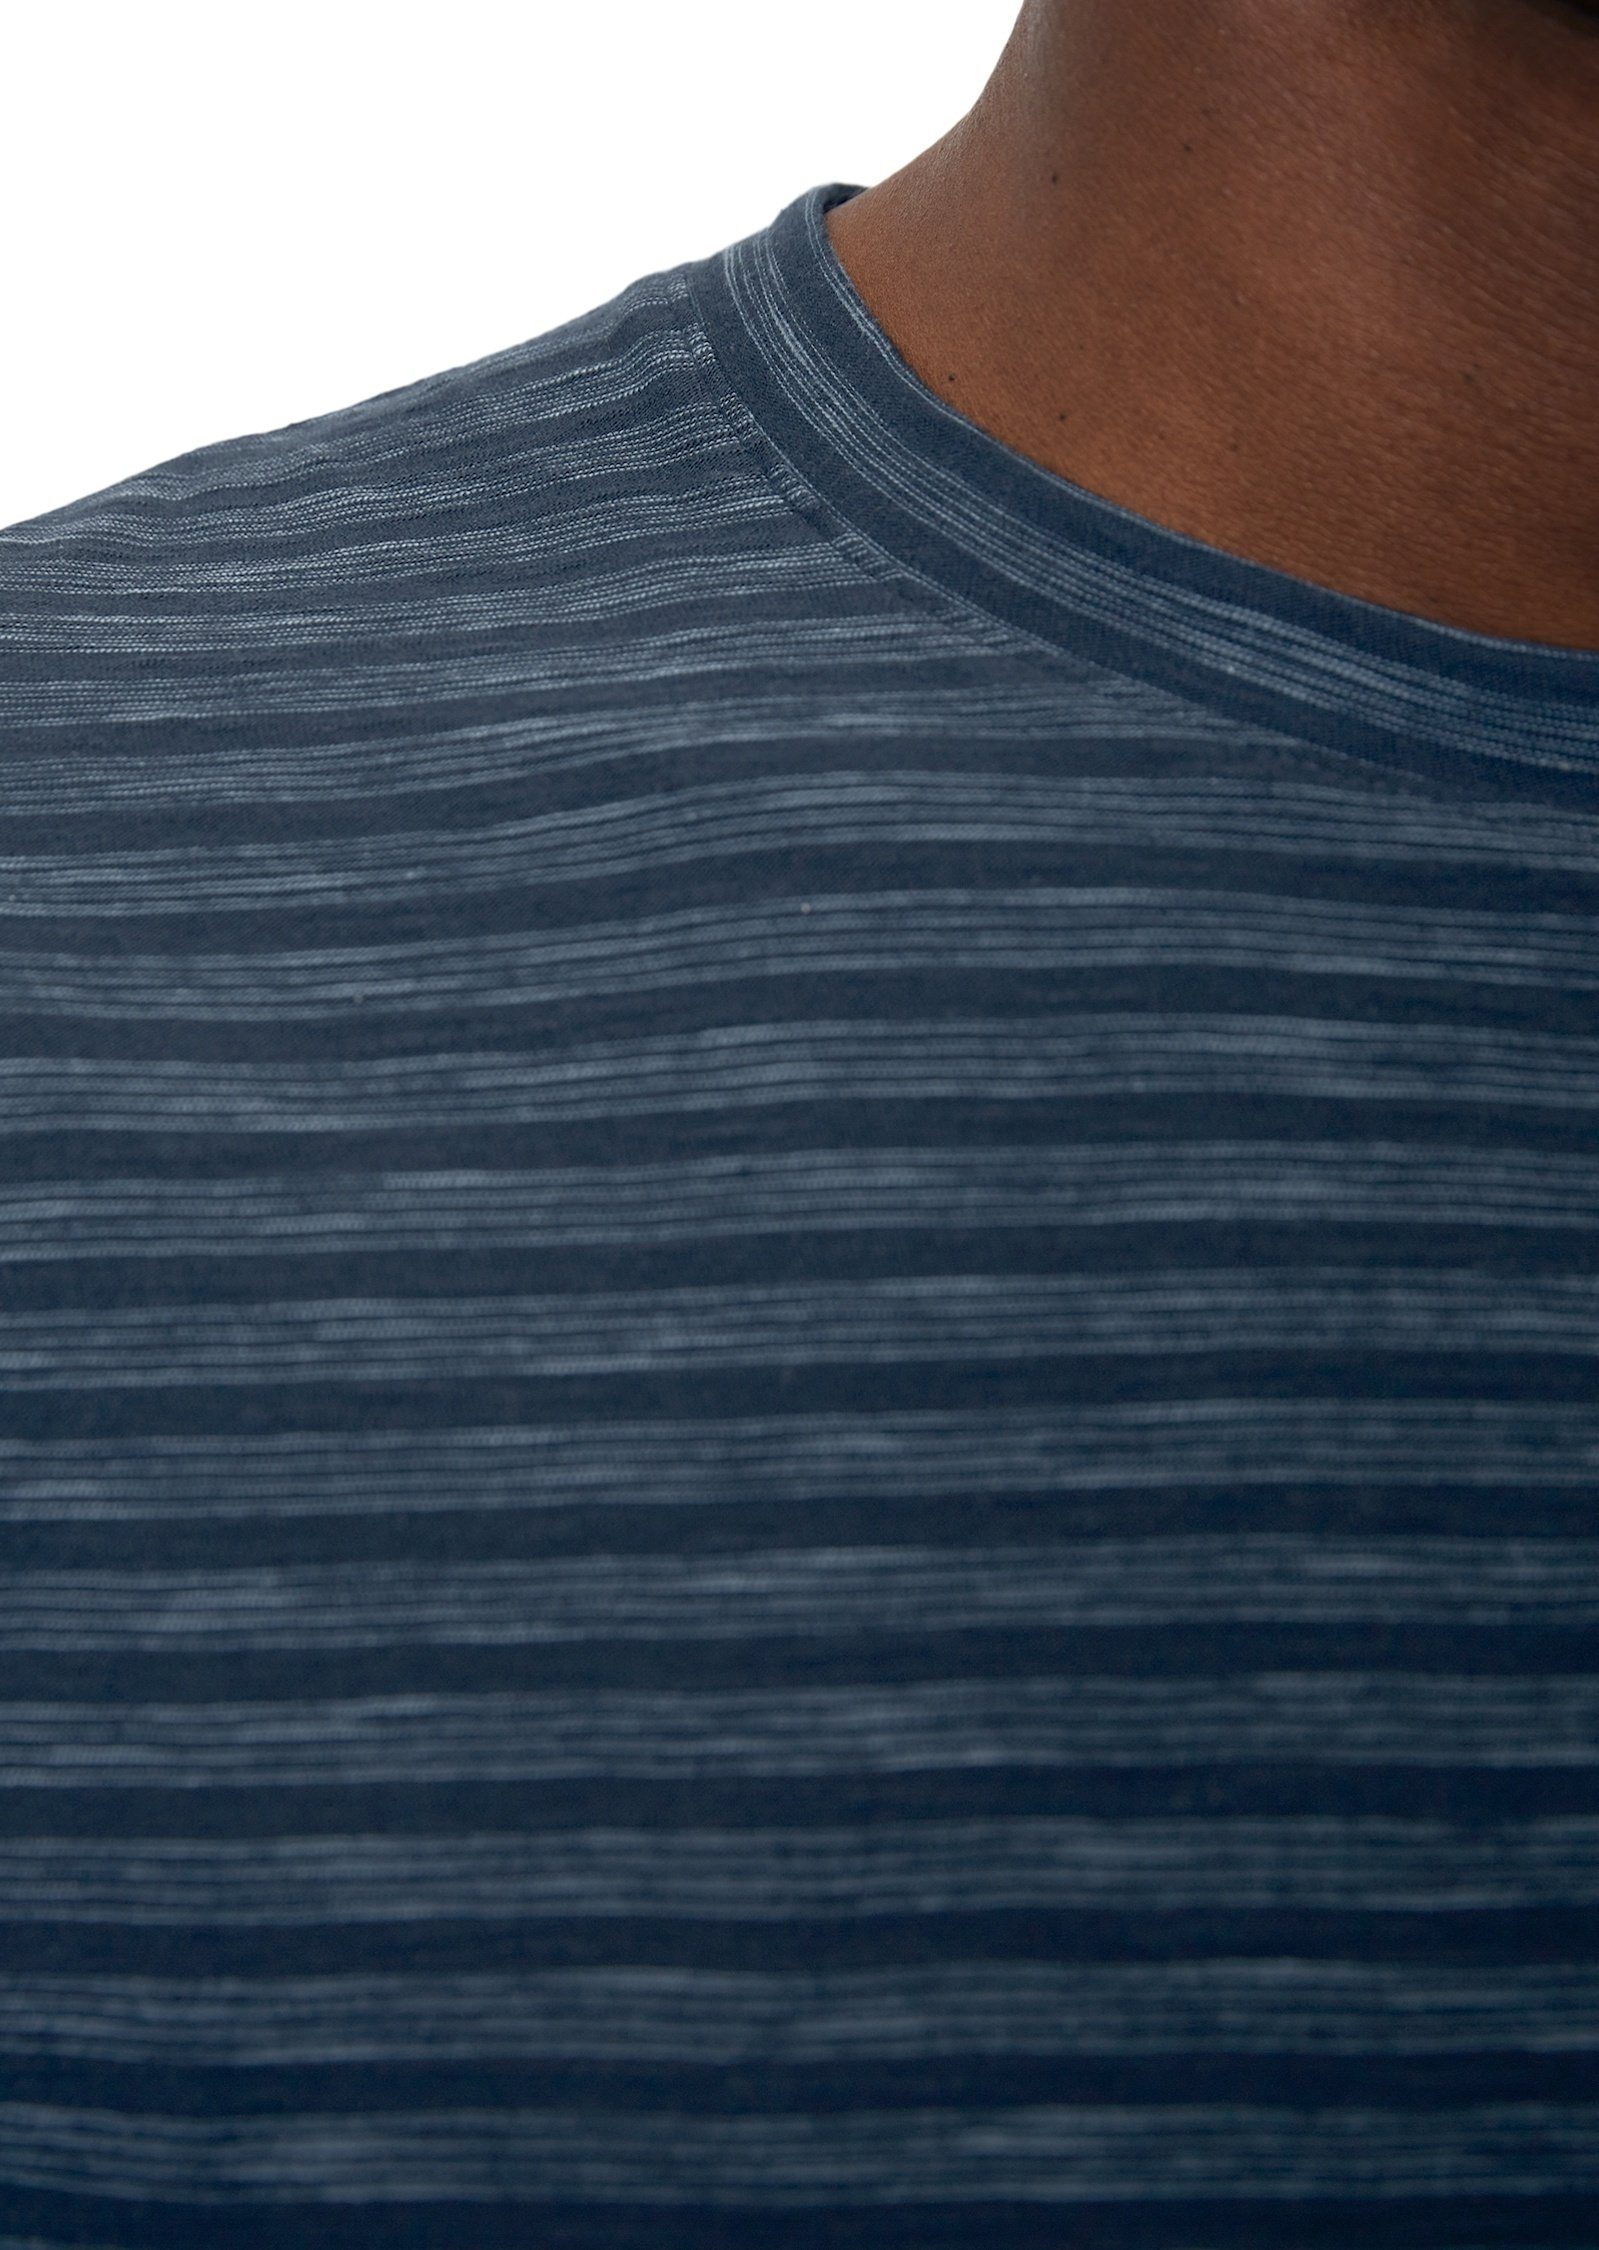 Marc O'Polo T-Shirt in Slub-Jersey dunkelblau softem